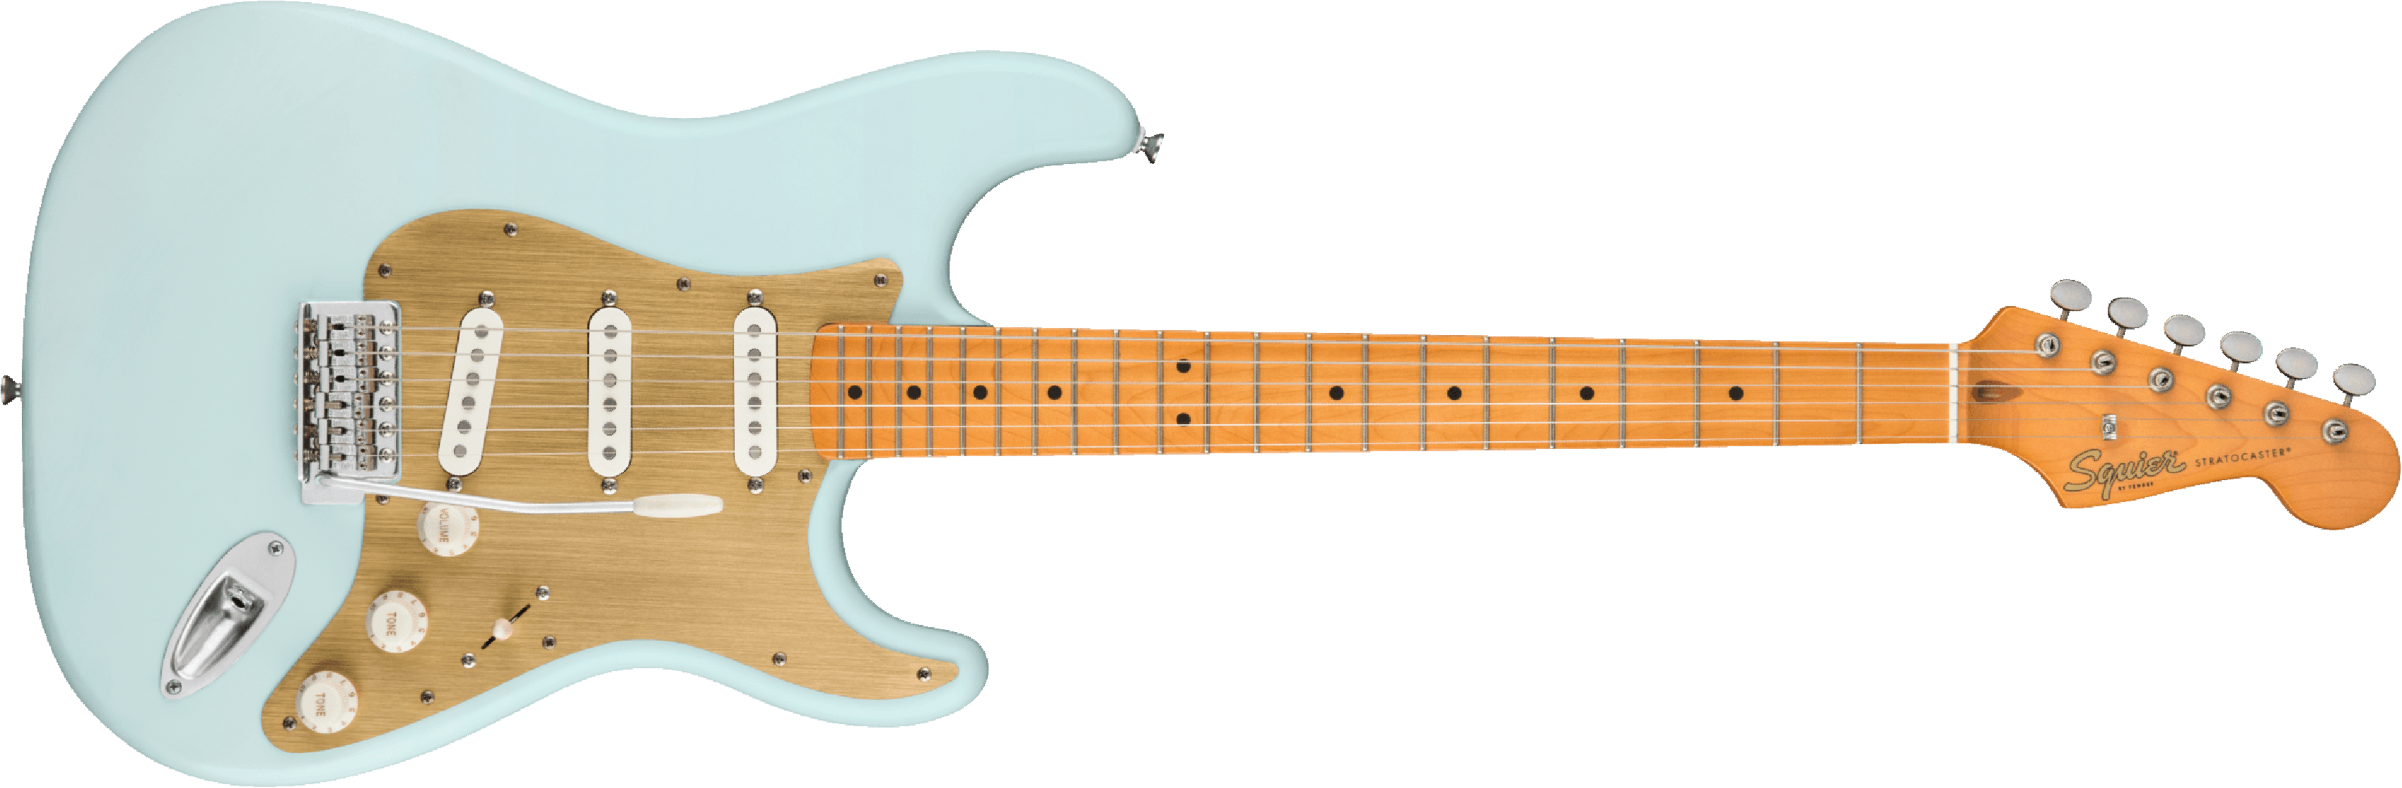 Squier Strat 40th Anniversary Vintage Edition Mn - Satin Sonic Blue - Elektrische gitaar in Str-vorm - Main picture